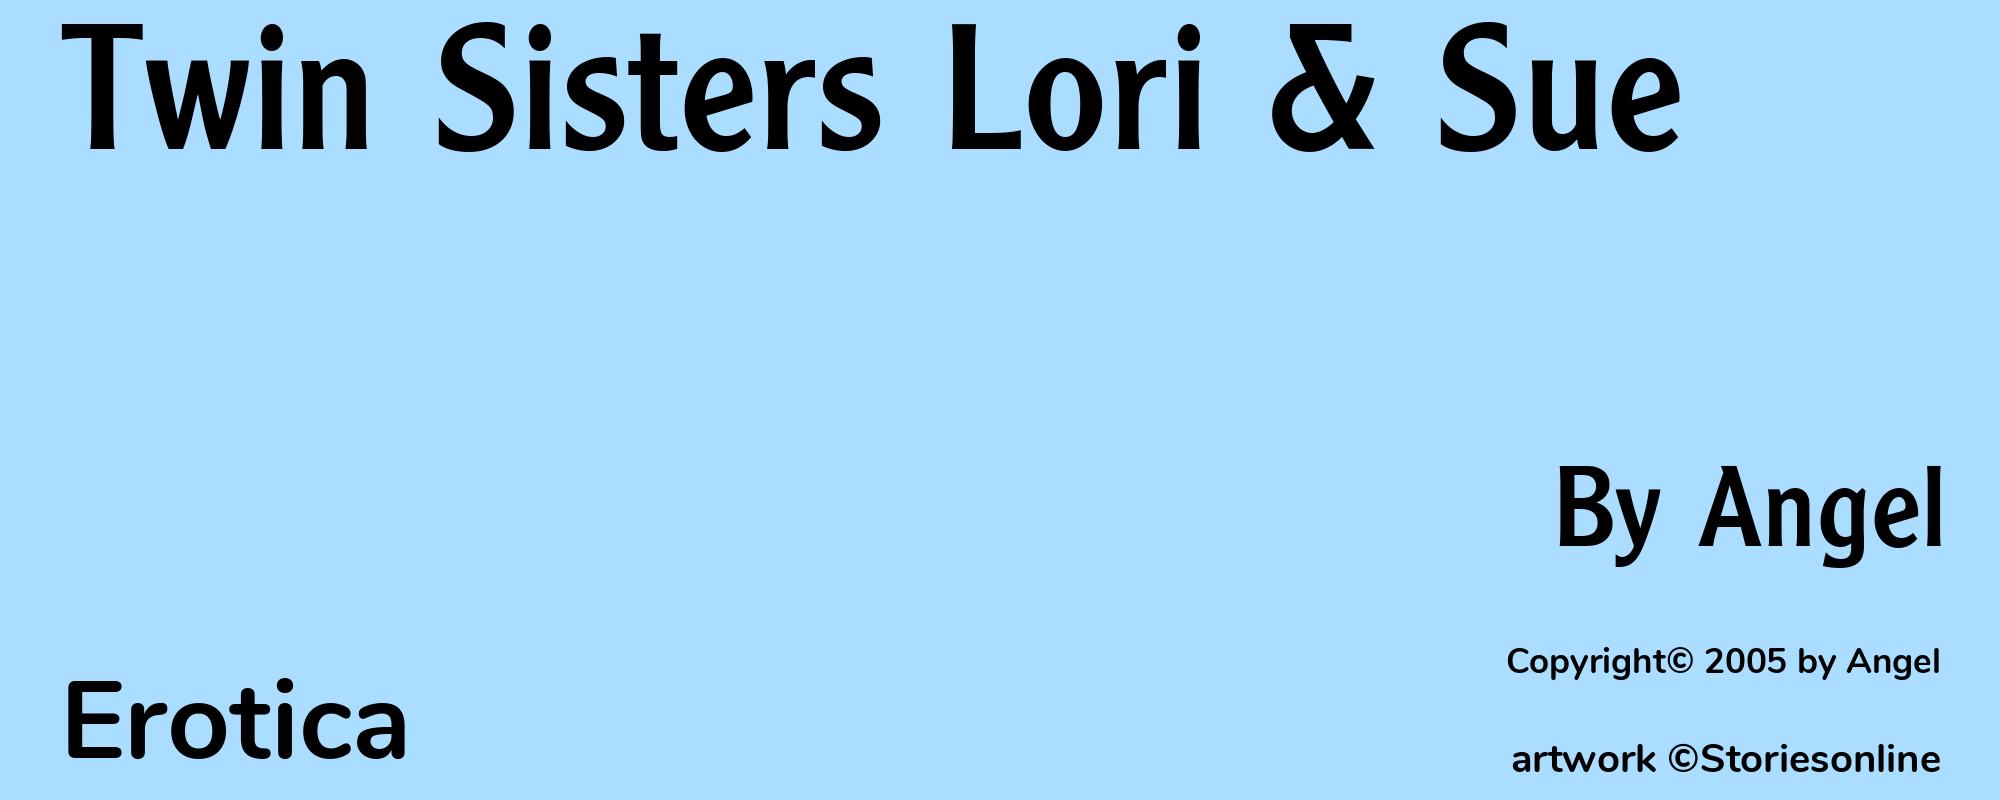 Twin Sisters Lori & Sue - Cover